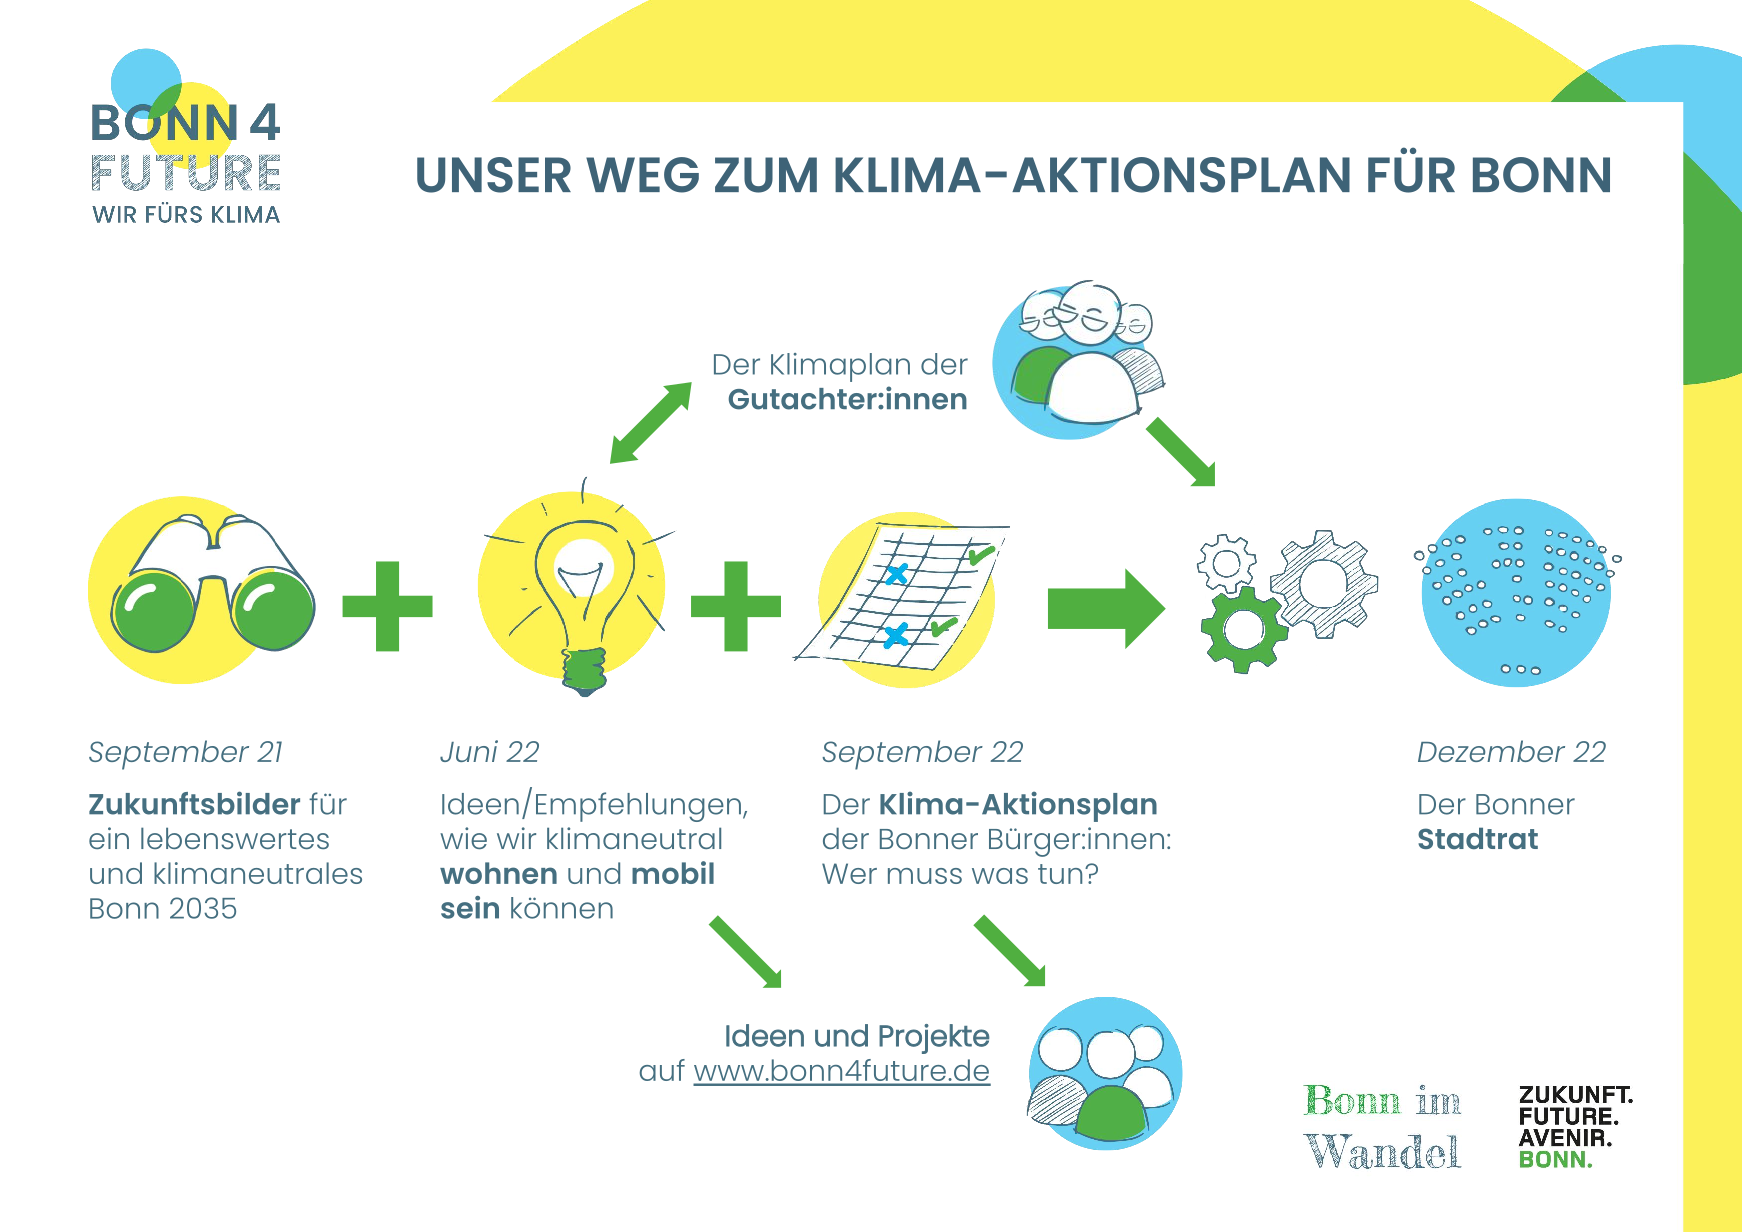 Übersicht: Unser Weg zum Klima-Aktionsplan für Bonn